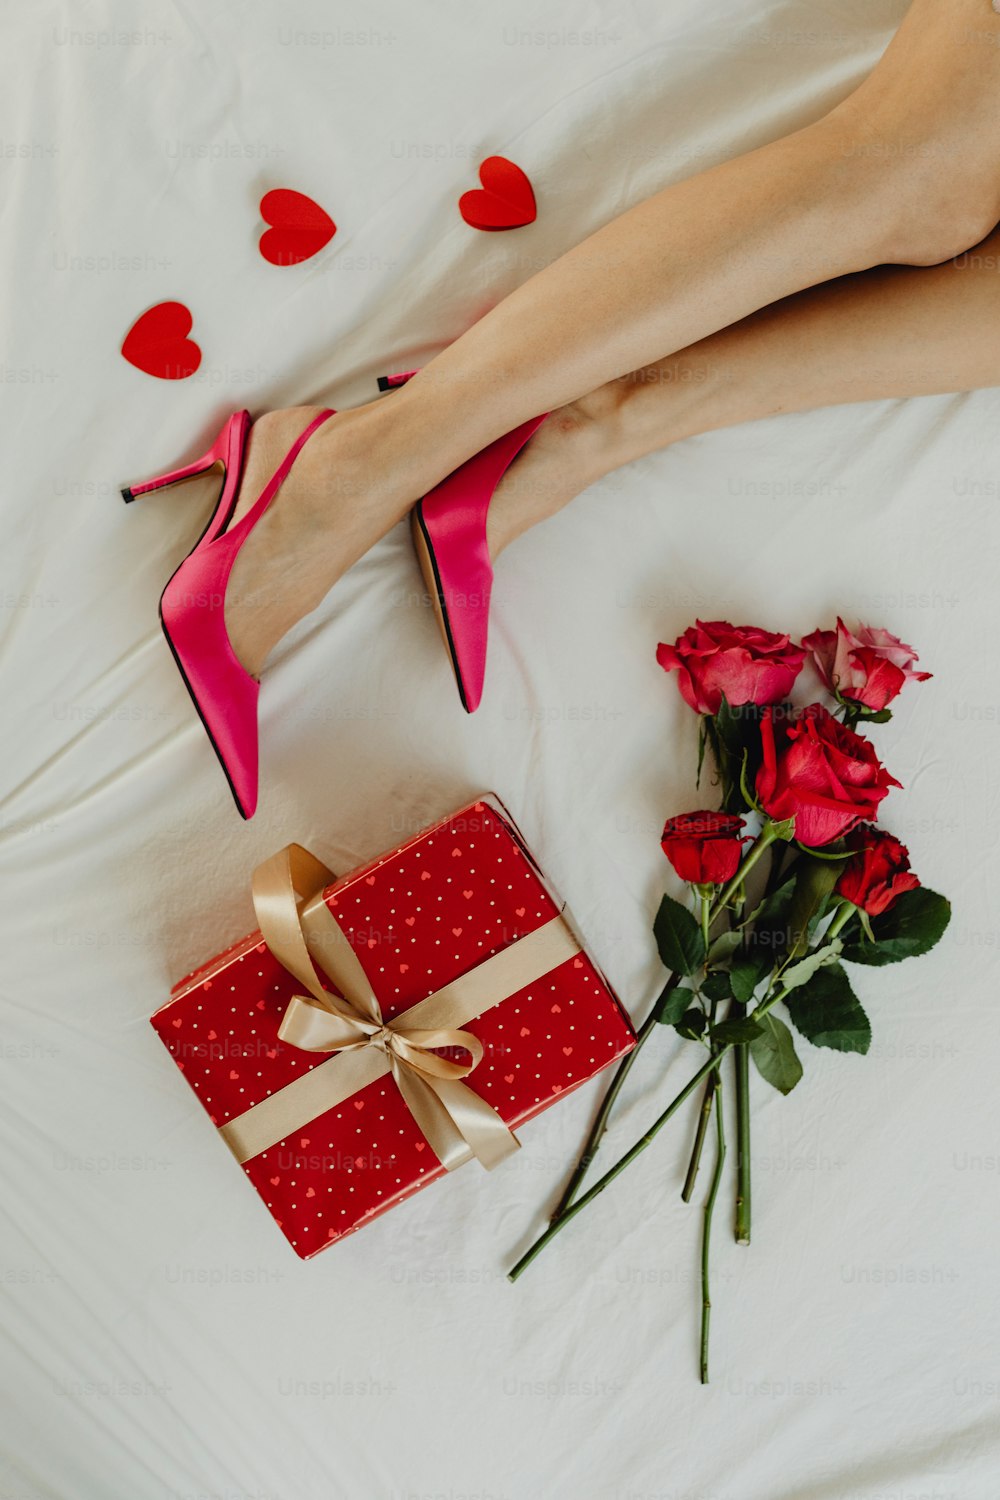 Eine Frau liegt mit einem Geschenk und Rosen im Bett